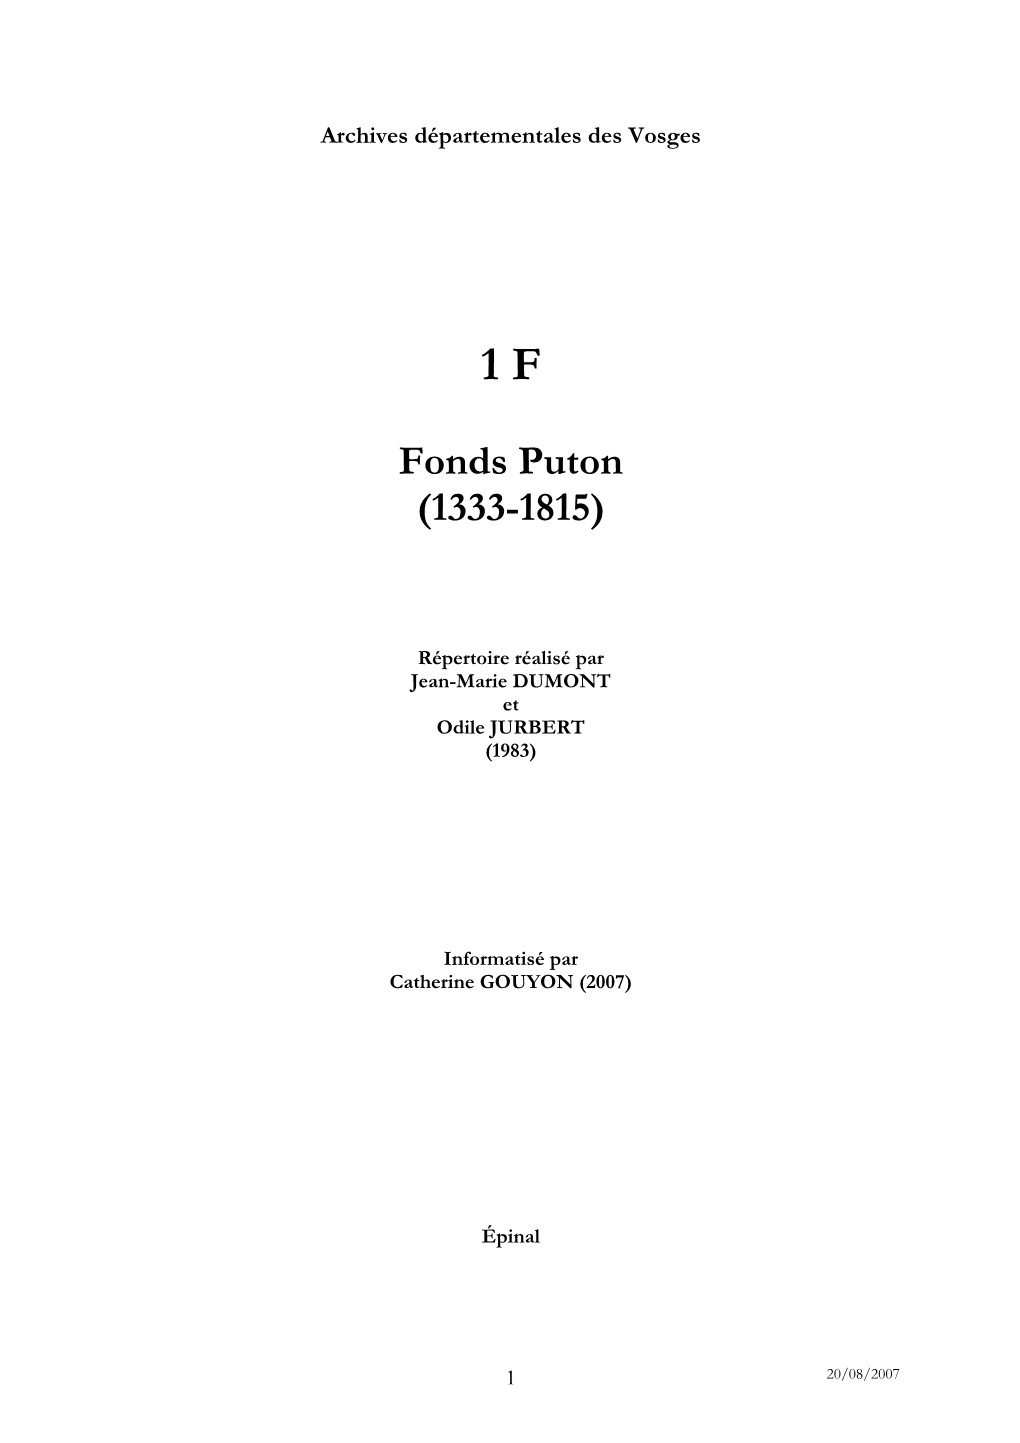 Fonds Puton (1333-1815)